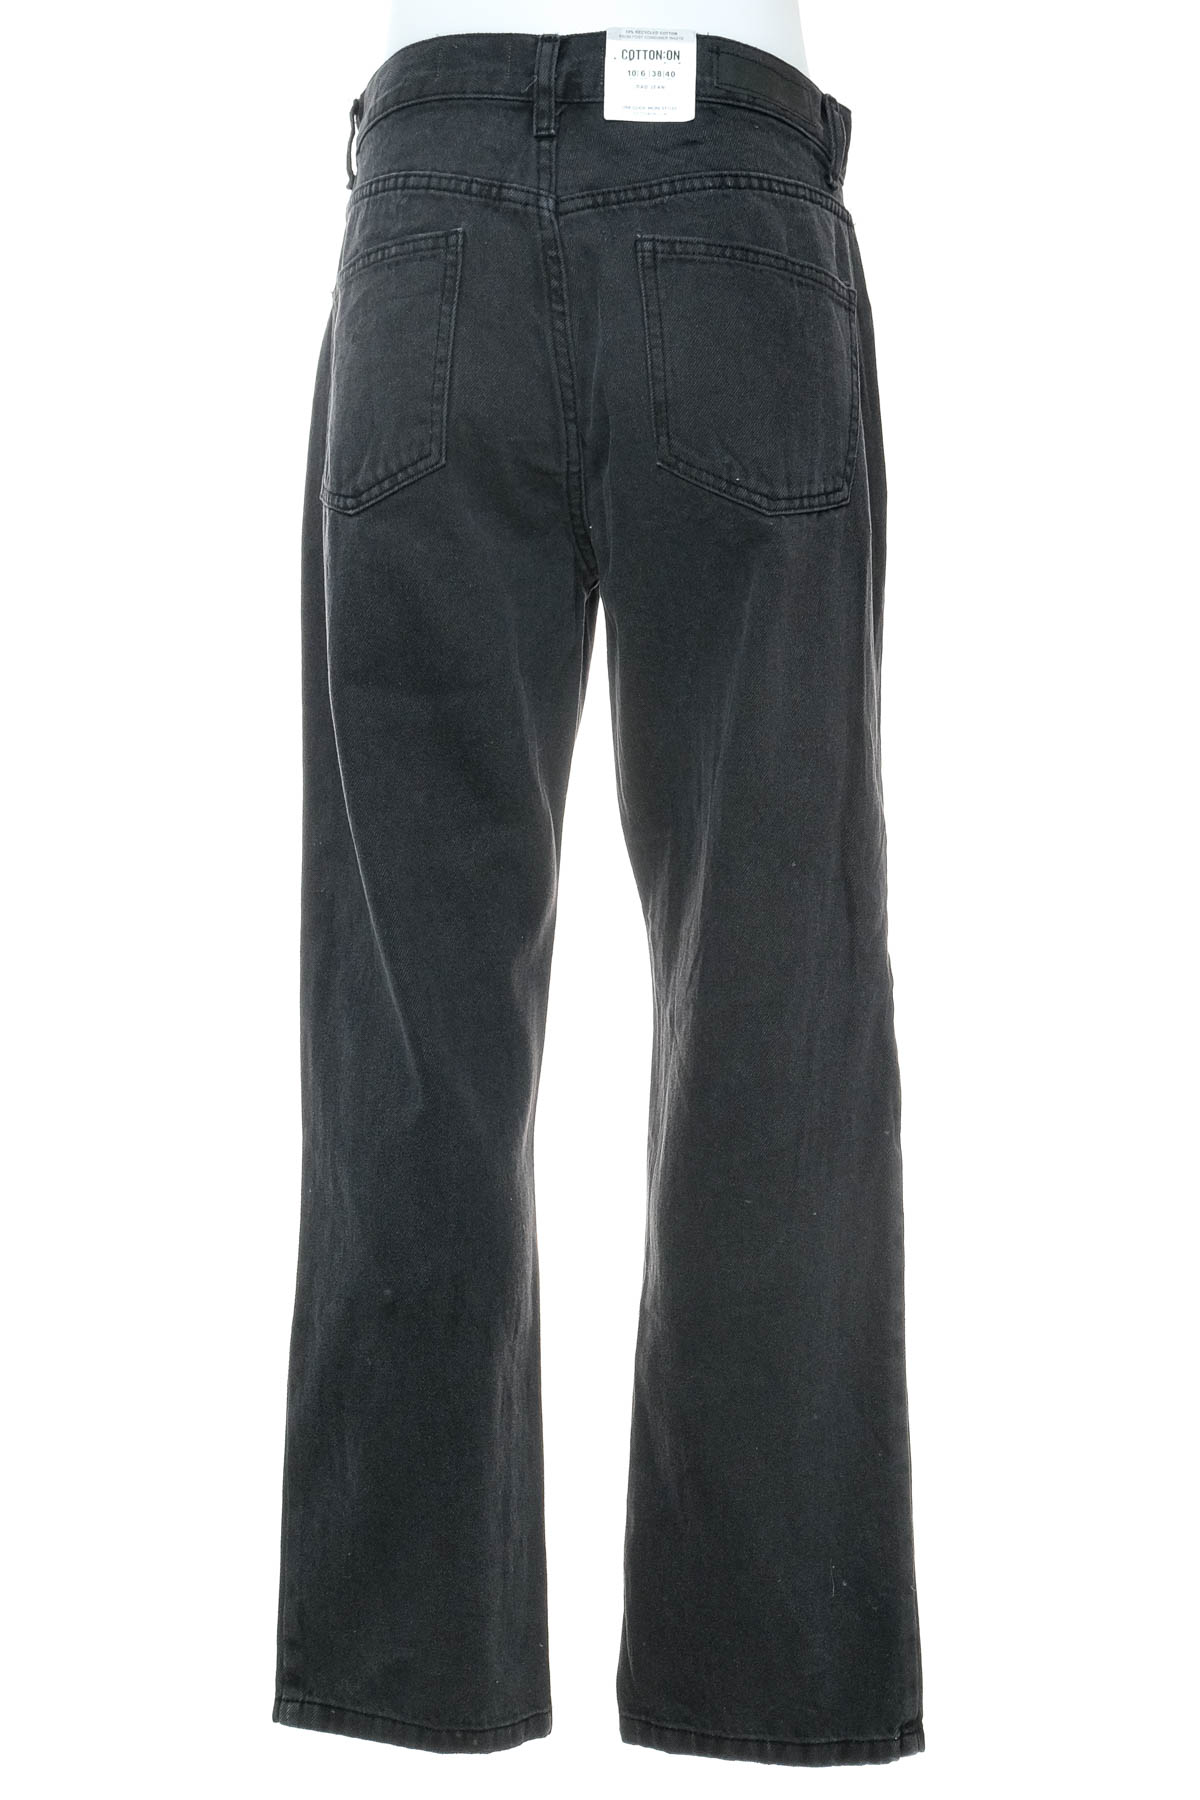 Men's jeans - COTTON:ON - 1